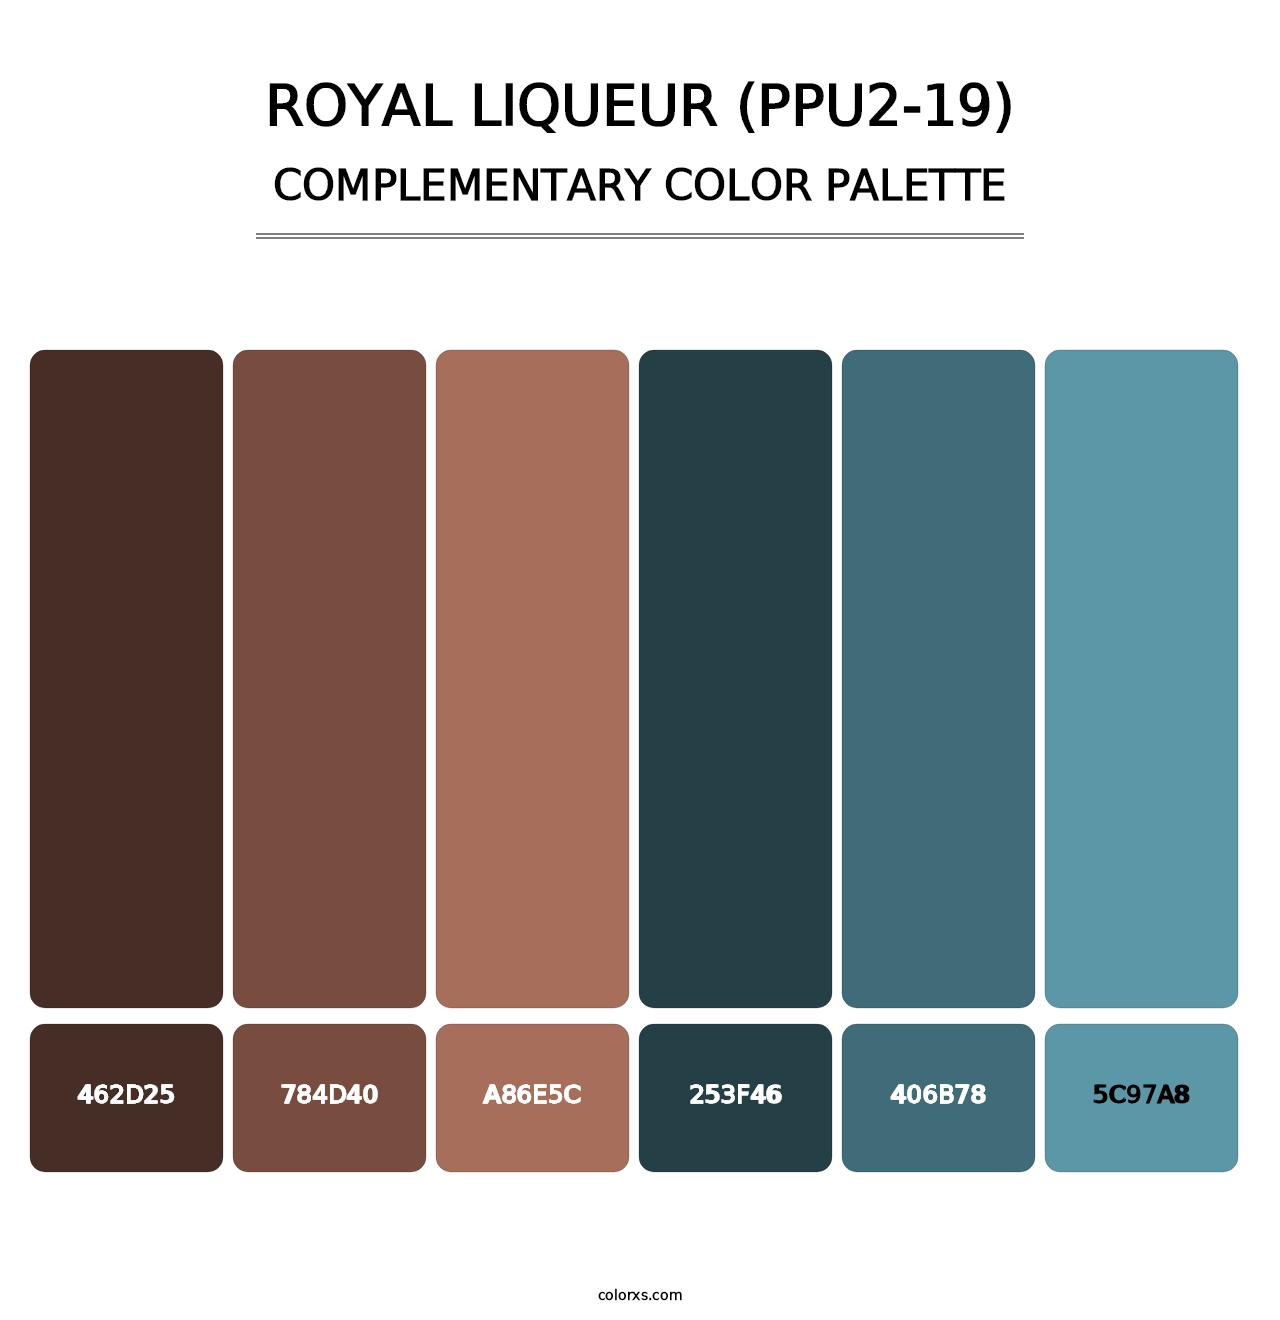 Royal Liqueur (PPU2-19) - Complementary Color Palette